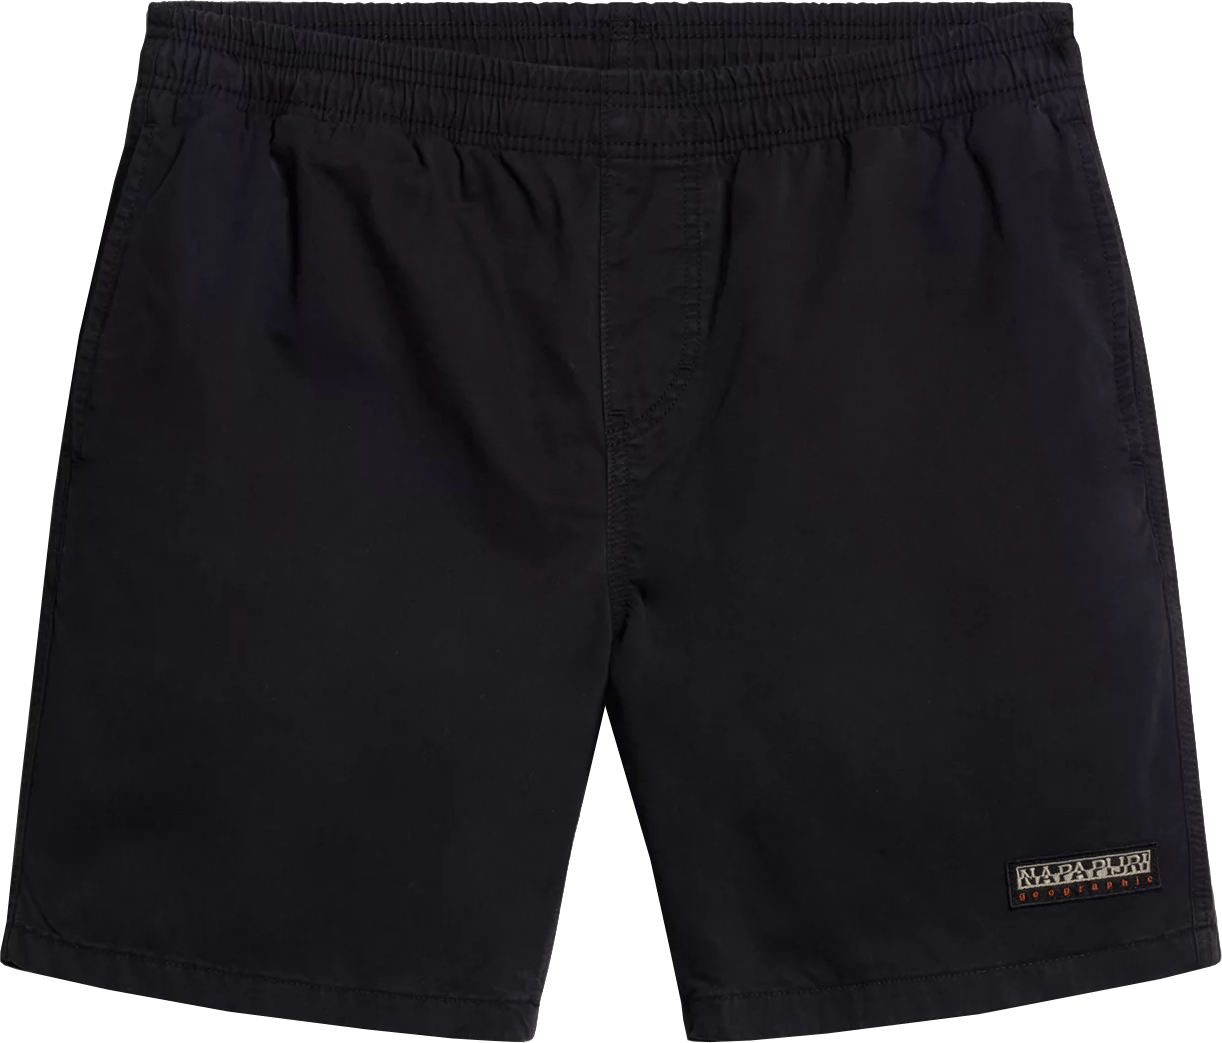 Napapijri Men's Boyd Bermuda Shorts Black